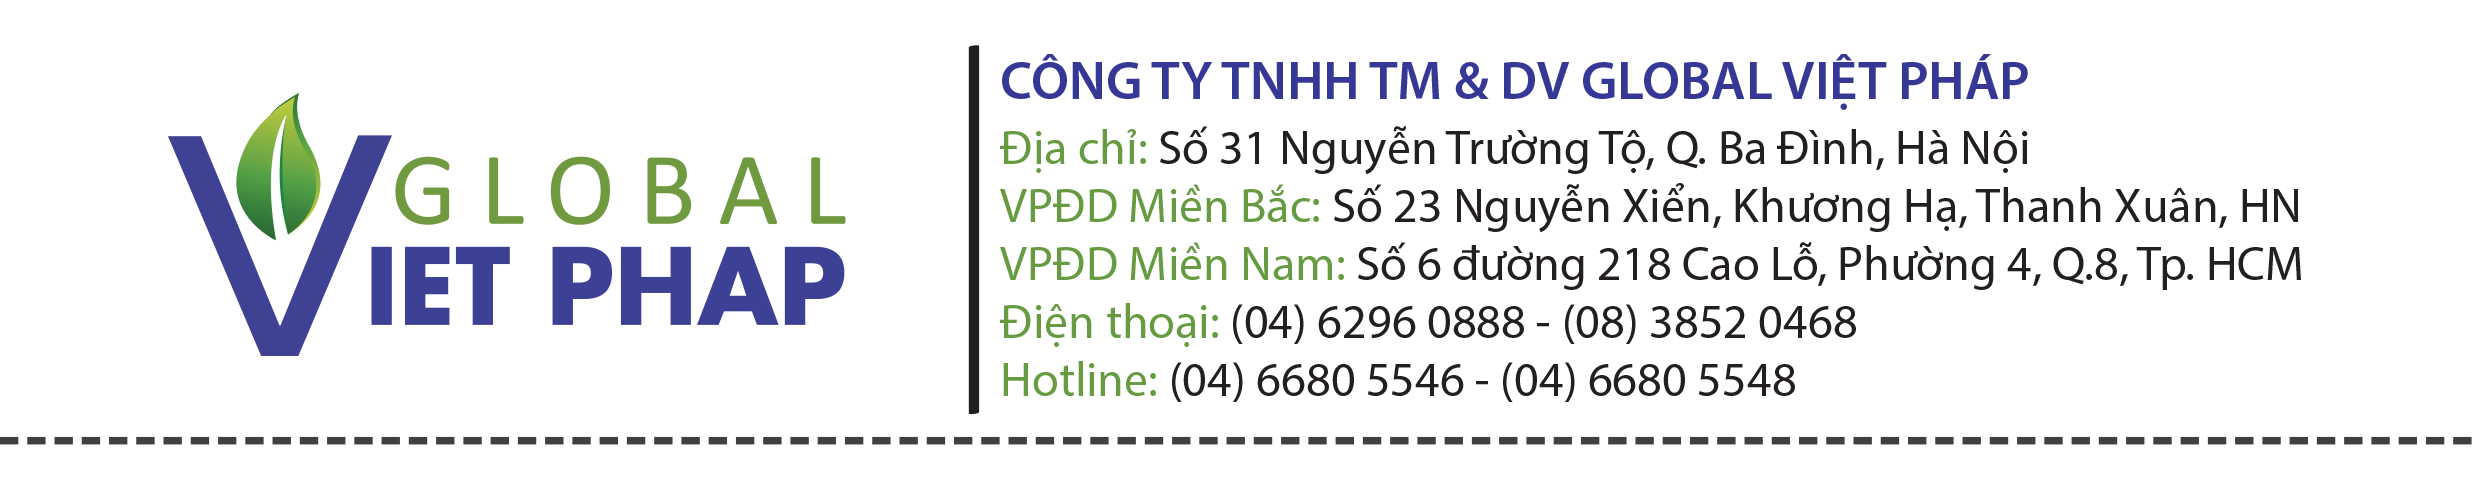 Logo Thuong Mai Va Dich Vu Global Viet Phap LTD